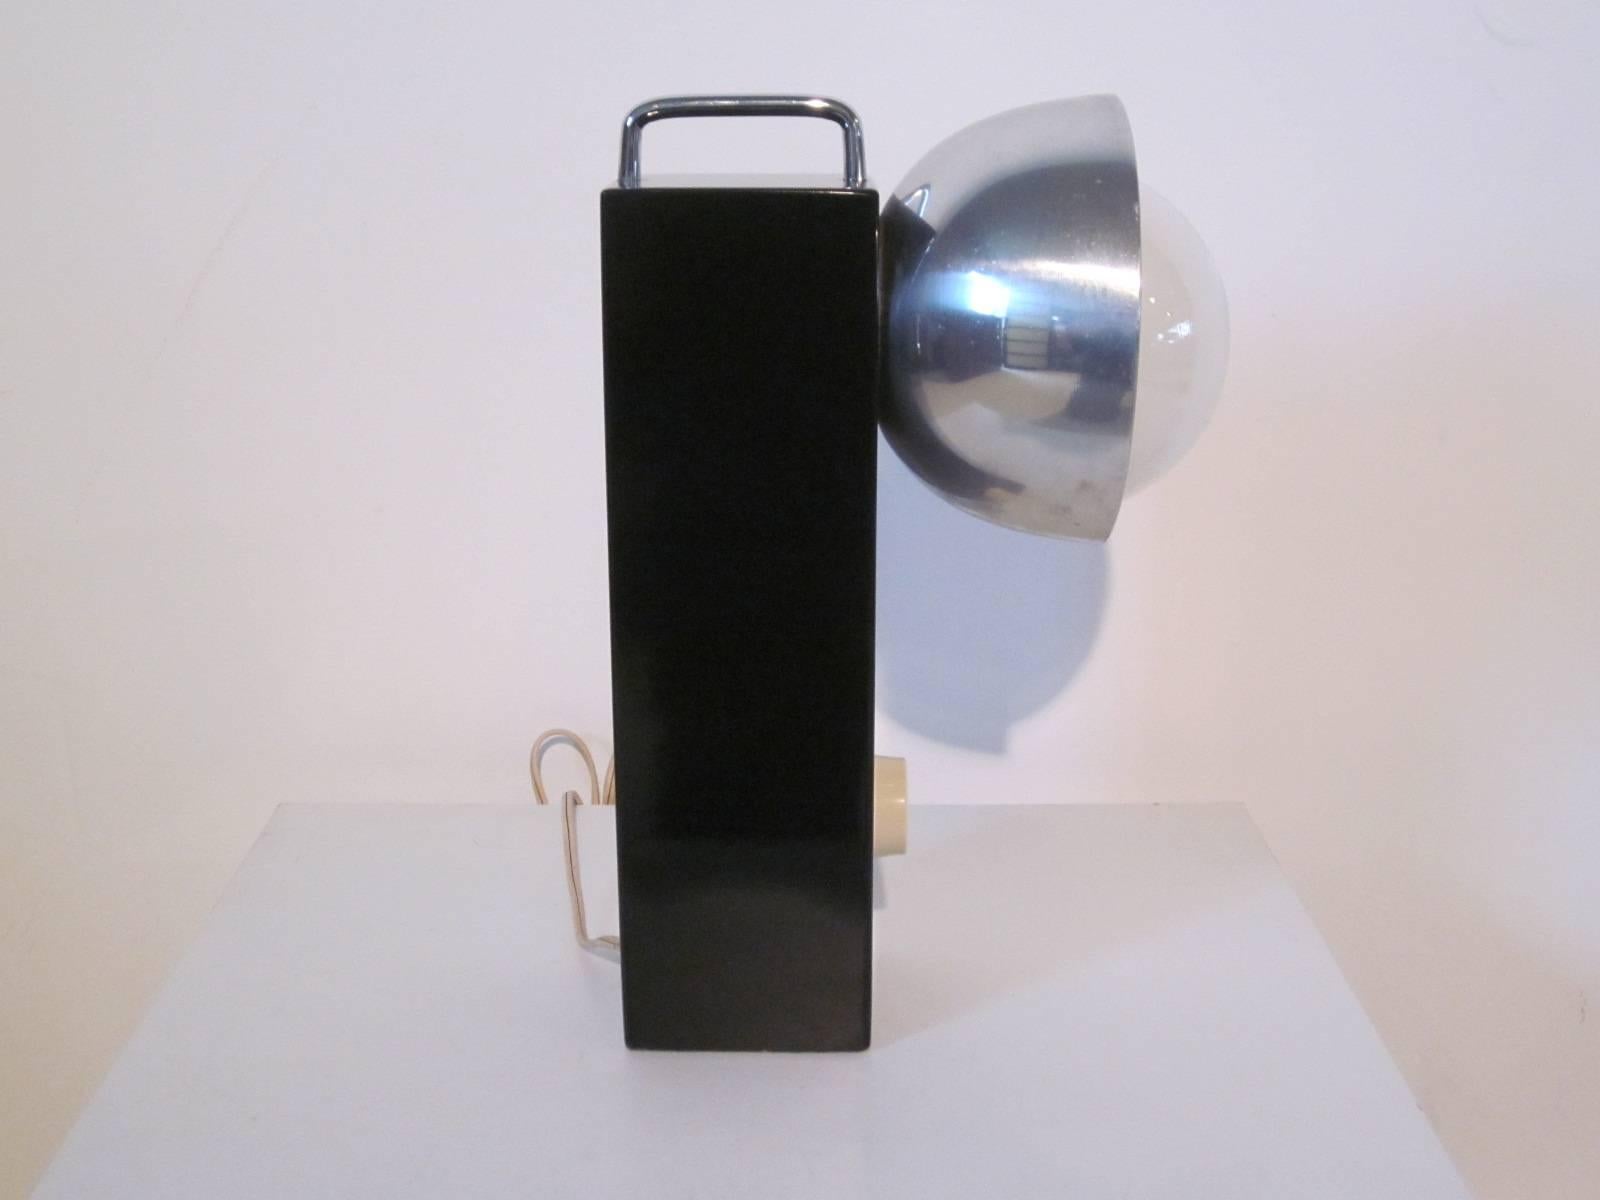 Eine Tischlampe im Mod-Stil mit schwarz lackiertem Massivholzsockel, verchromtem Griff an der Oberseite, großem Aluminiumschirm an der Seite mit Glühbirne und Dimmerschalter. Kann eine große weiße Glühbirne oder eine kleinere, verchromte Glühbirne